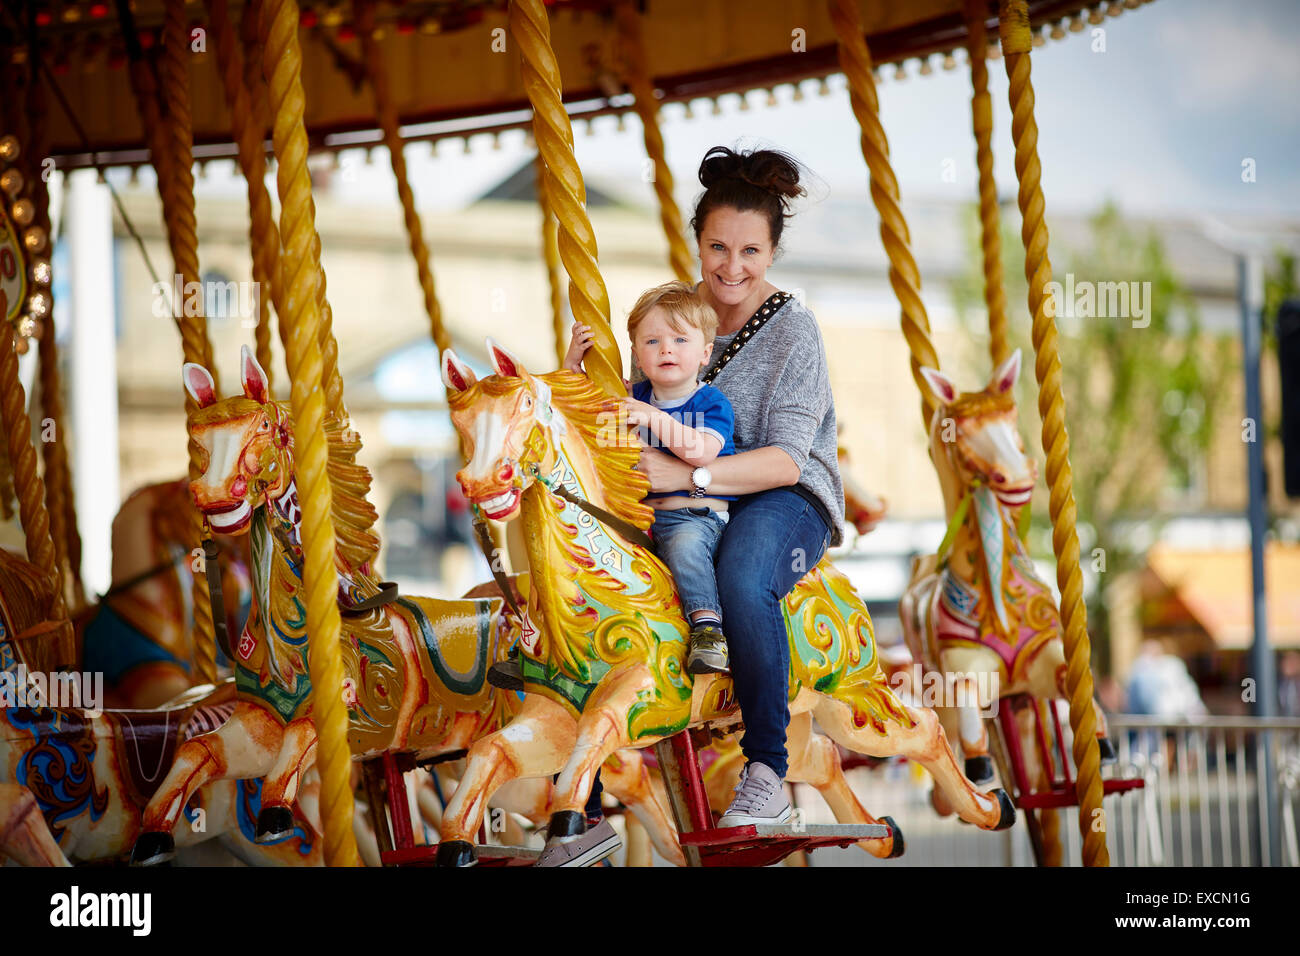 Bilder rund um Southport abgebildet Mutter und Kind auf einem Karussell am Meer Southport ist eine große Stadt in der Stockfoto